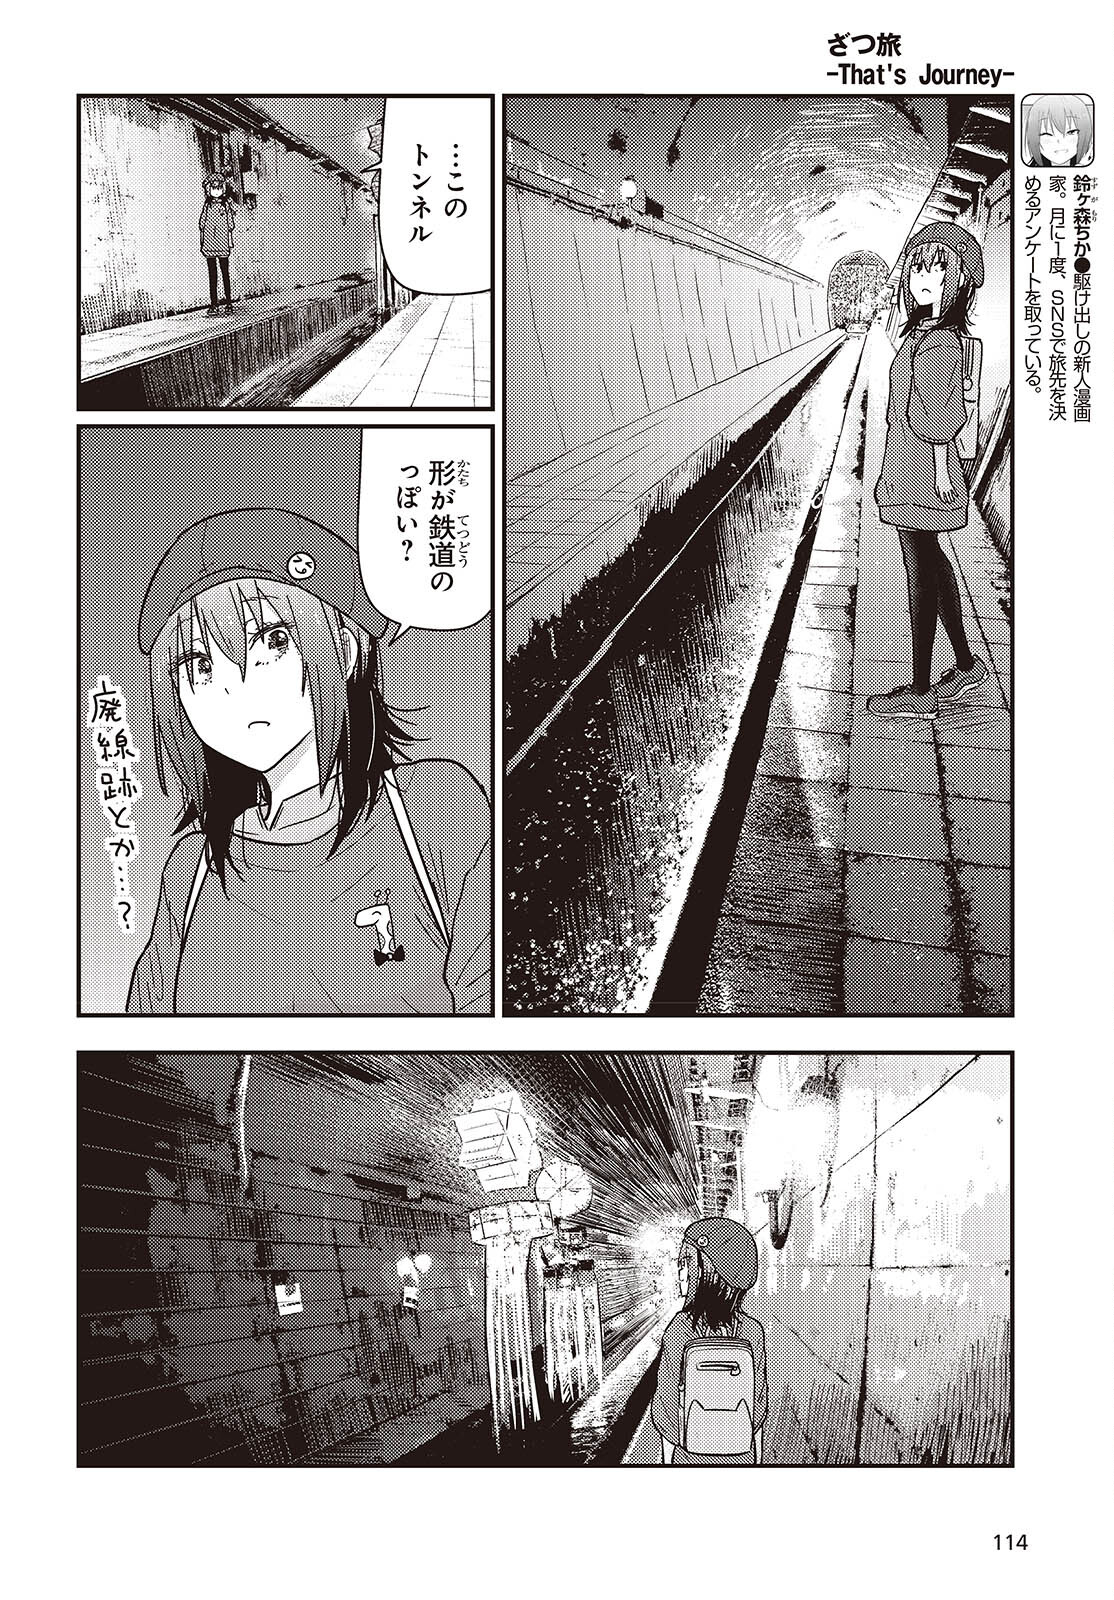 ざつ旅-That’s Journey- 第35話 - Page 4